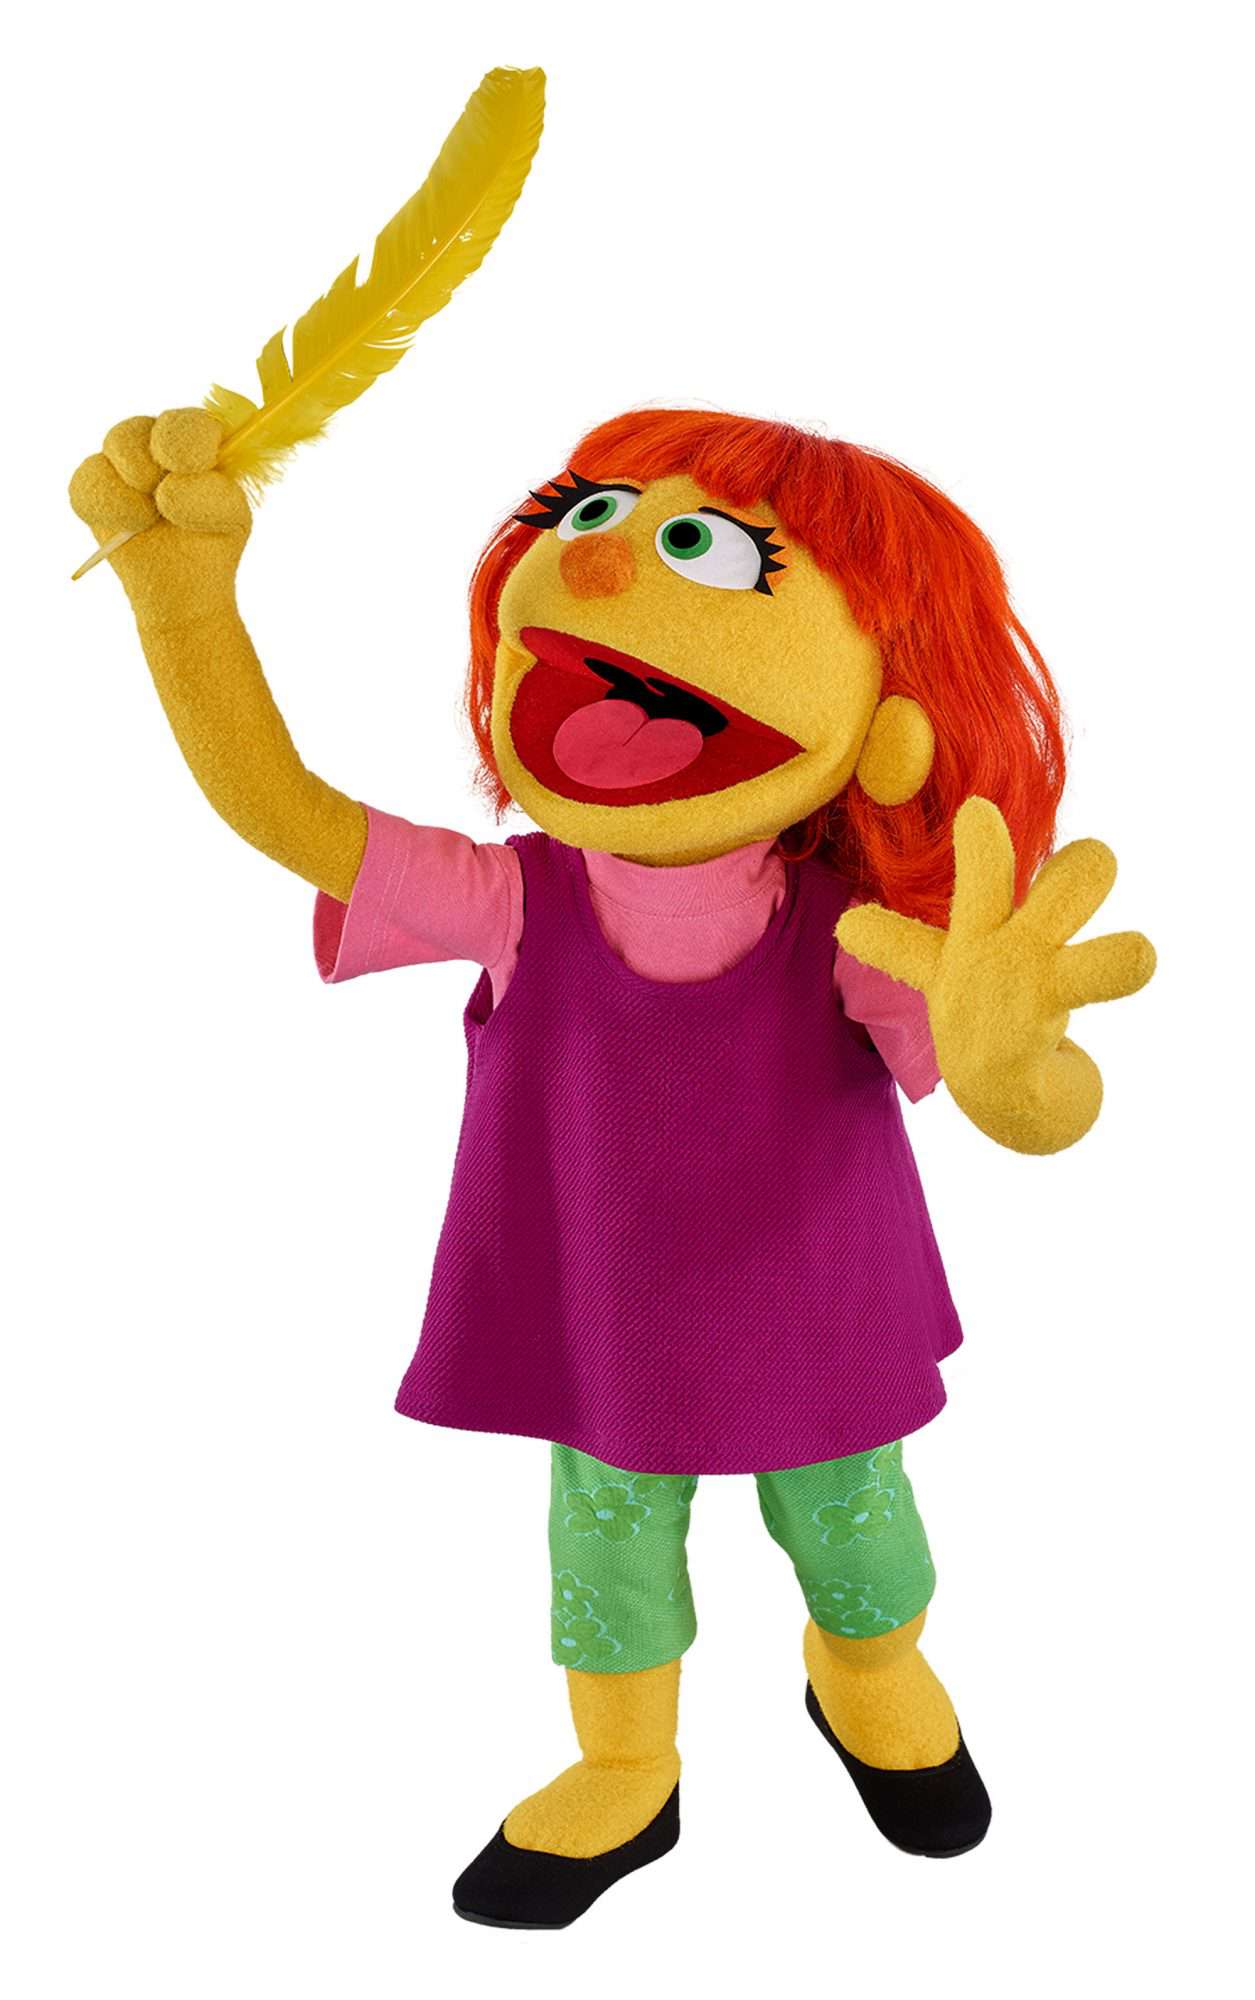 Julia muppetCredit: Sesame Workshop